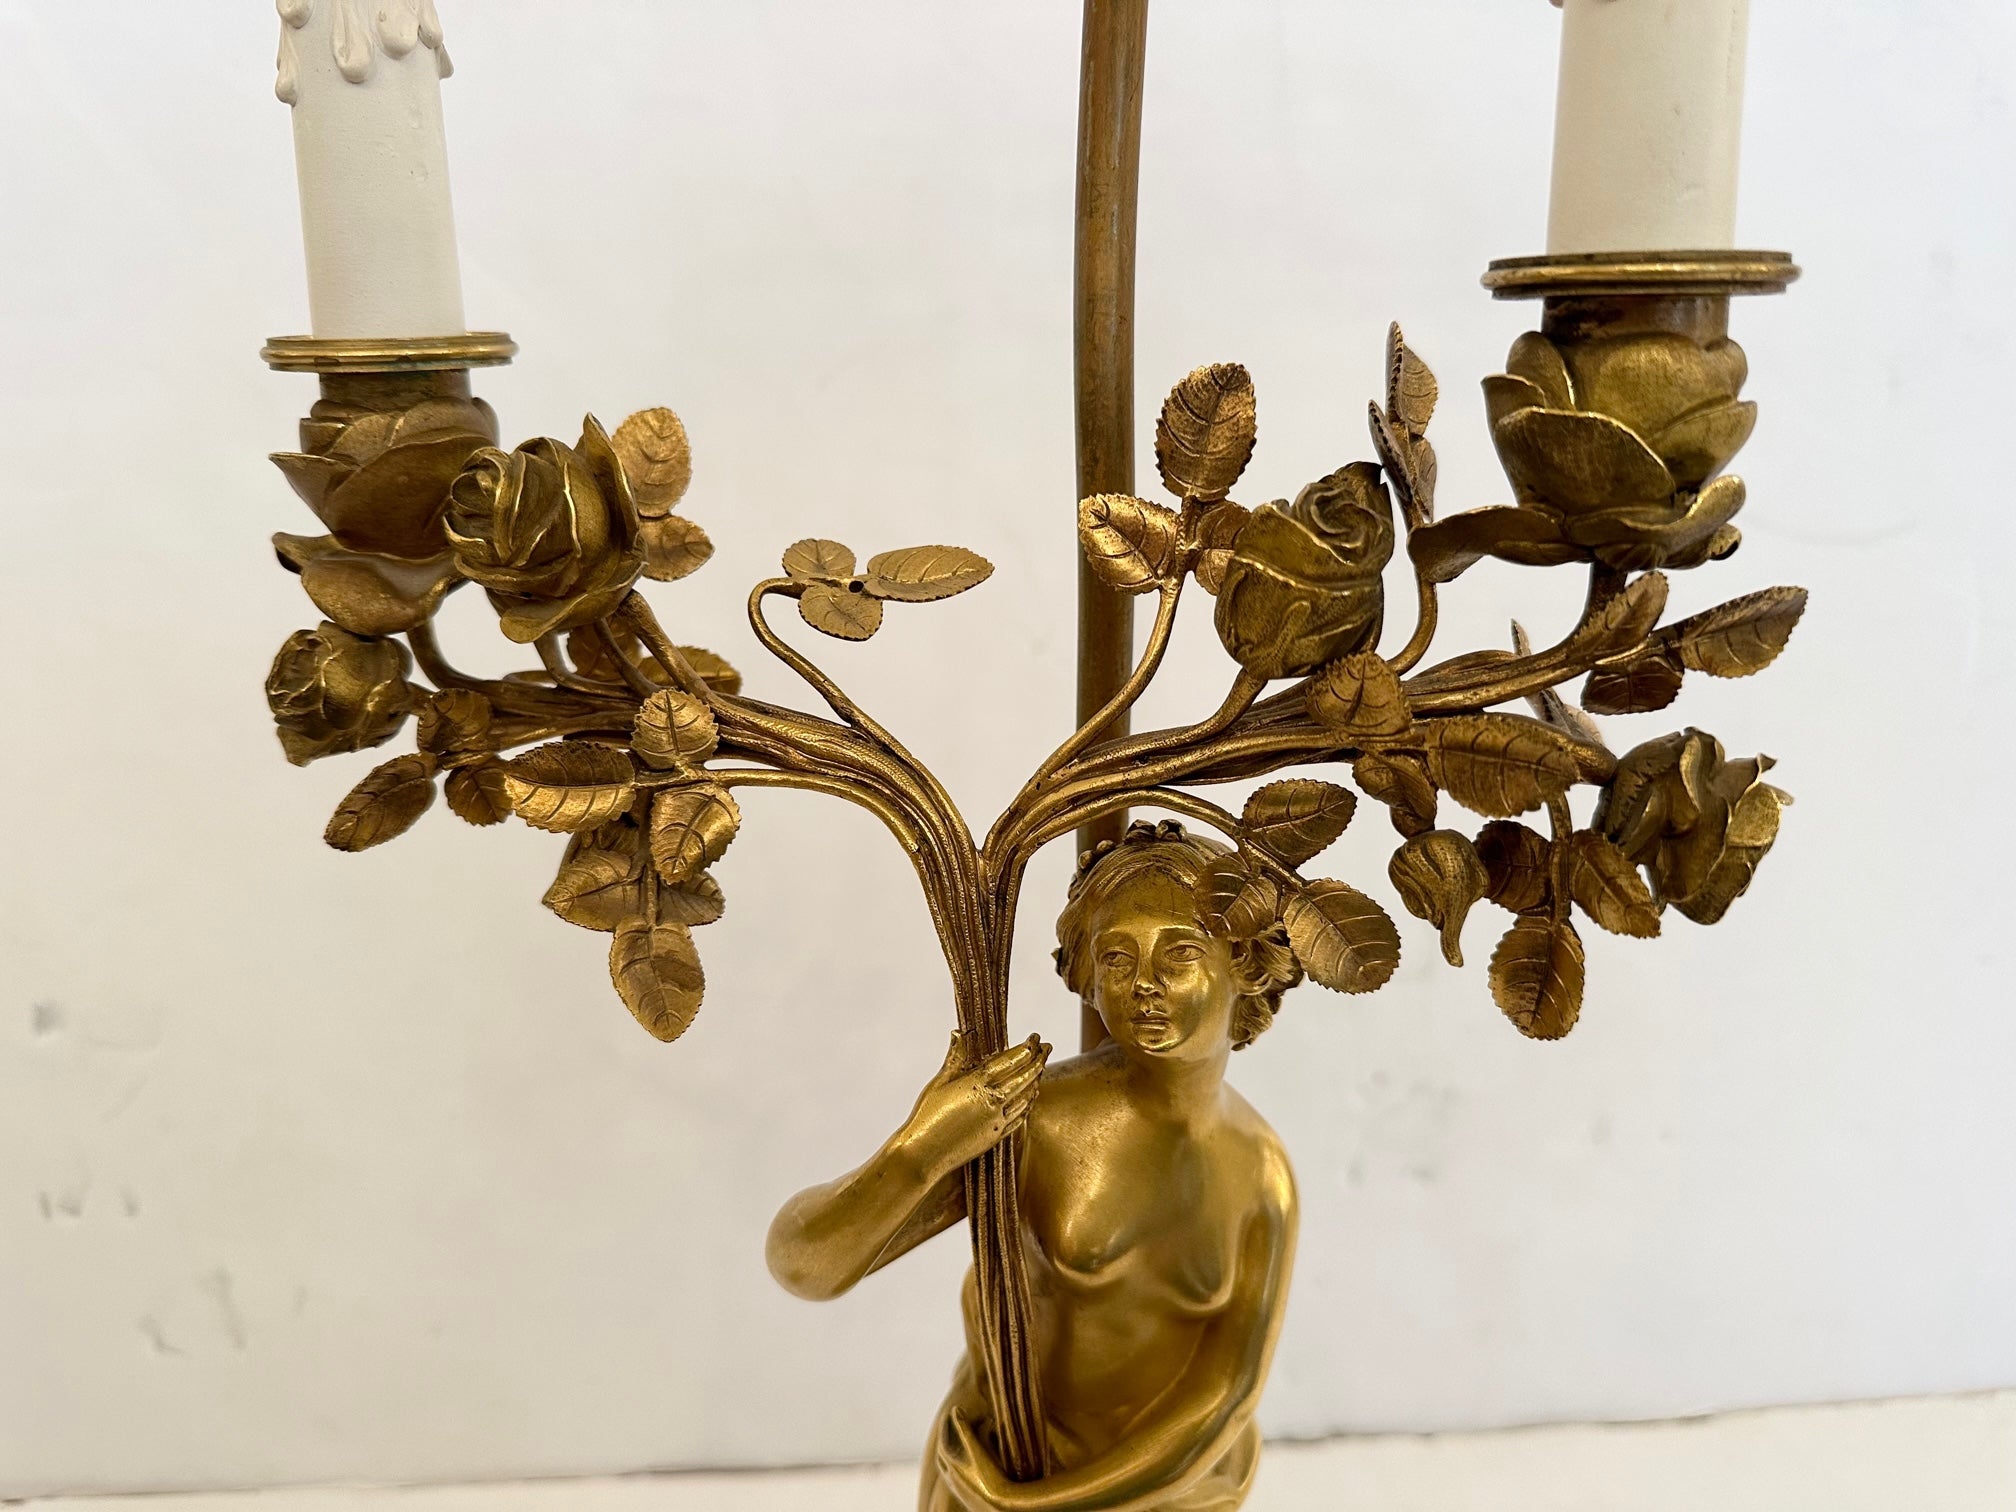 Magnifique lampe de table en bronze doré de style Empire français représentant une nymphe tenant une torche florale à deux branches avec des bougies en céramique.  Les détails tels que son visage angélique, ses jolies mains et ses pieds, ainsi que